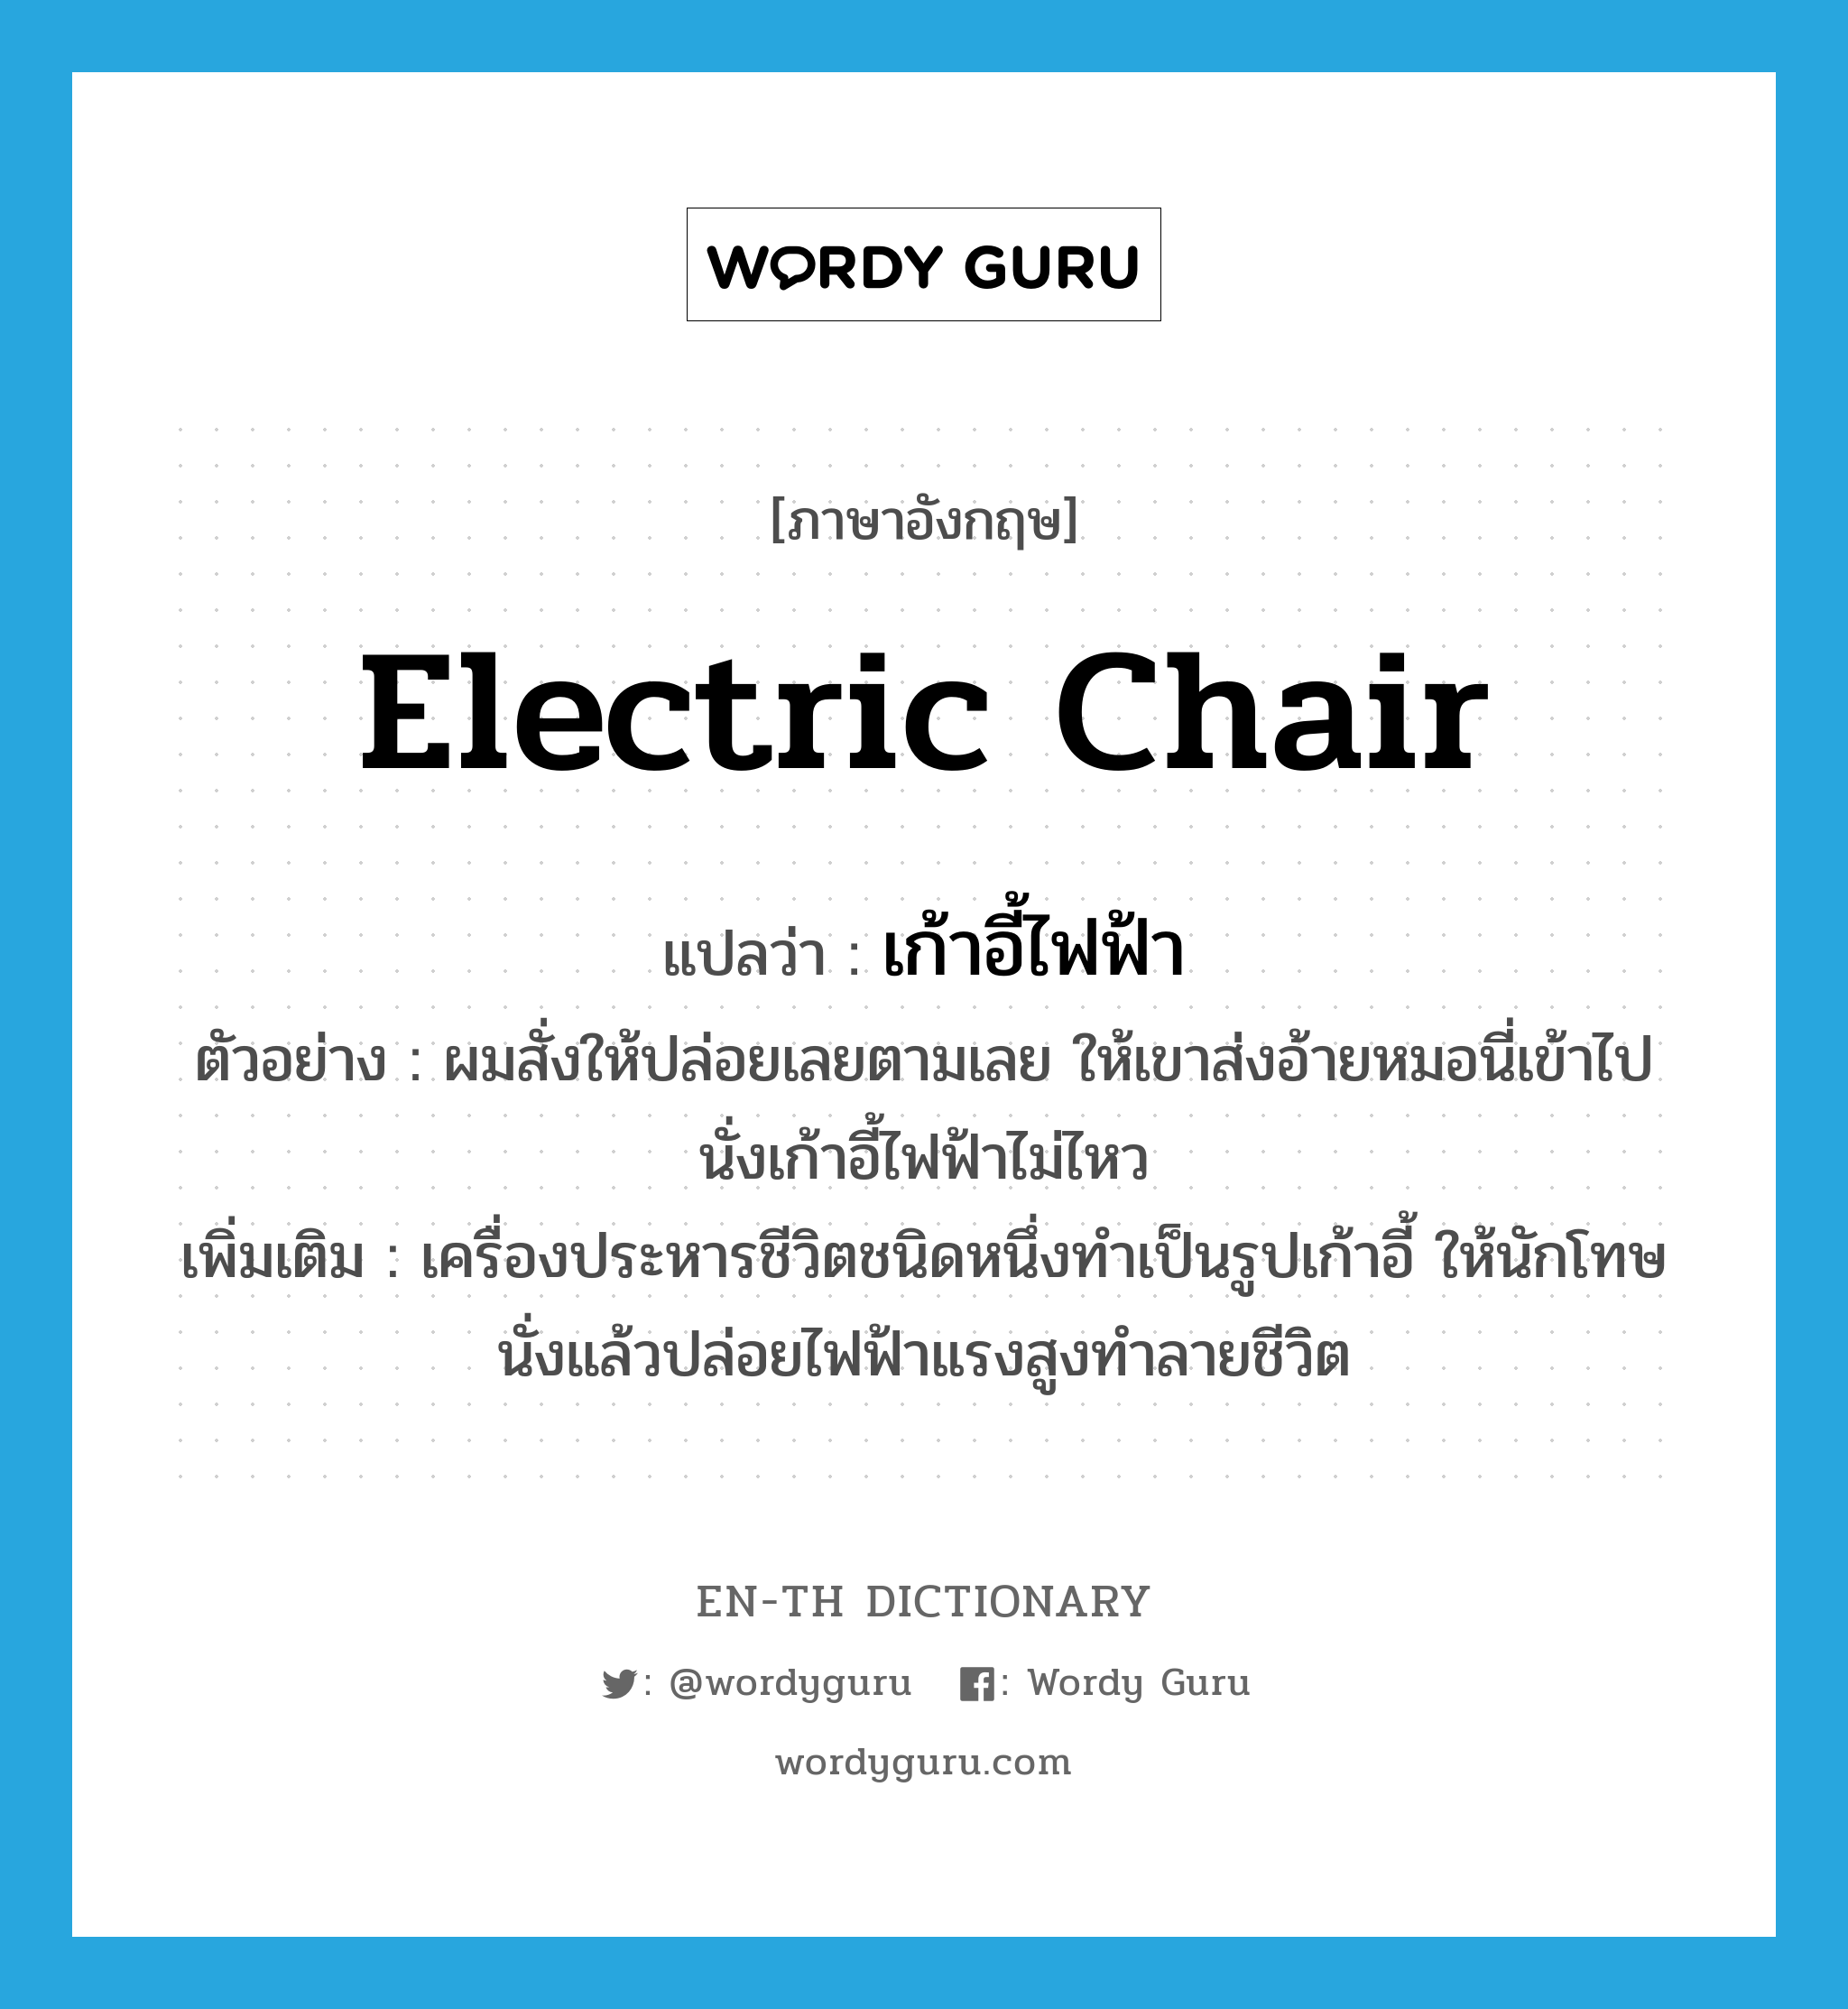 electric chair แปลว่า?, คำศัพท์ภาษาอังกฤษ electric chair แปลว่า เก้าอี้ไฟฟ้า ประเภท N ตัวอย่าง ผมสั่งให้ปล่อยเลยตามเลย ให้เขาส่งอ้ายหมอนี่เข้าไปนั่งเก้าอี้ไฟฟ้าไม่ไหว เพิ่มเติม เครื่องประหารชีวิตชนิดหนึ่งทำเป็นรูปเก้าอี้ ให้นักโทษนั่งแล้วปล่อยไฟฟ้าแรงสูงทำลายชีวิต หมวด N